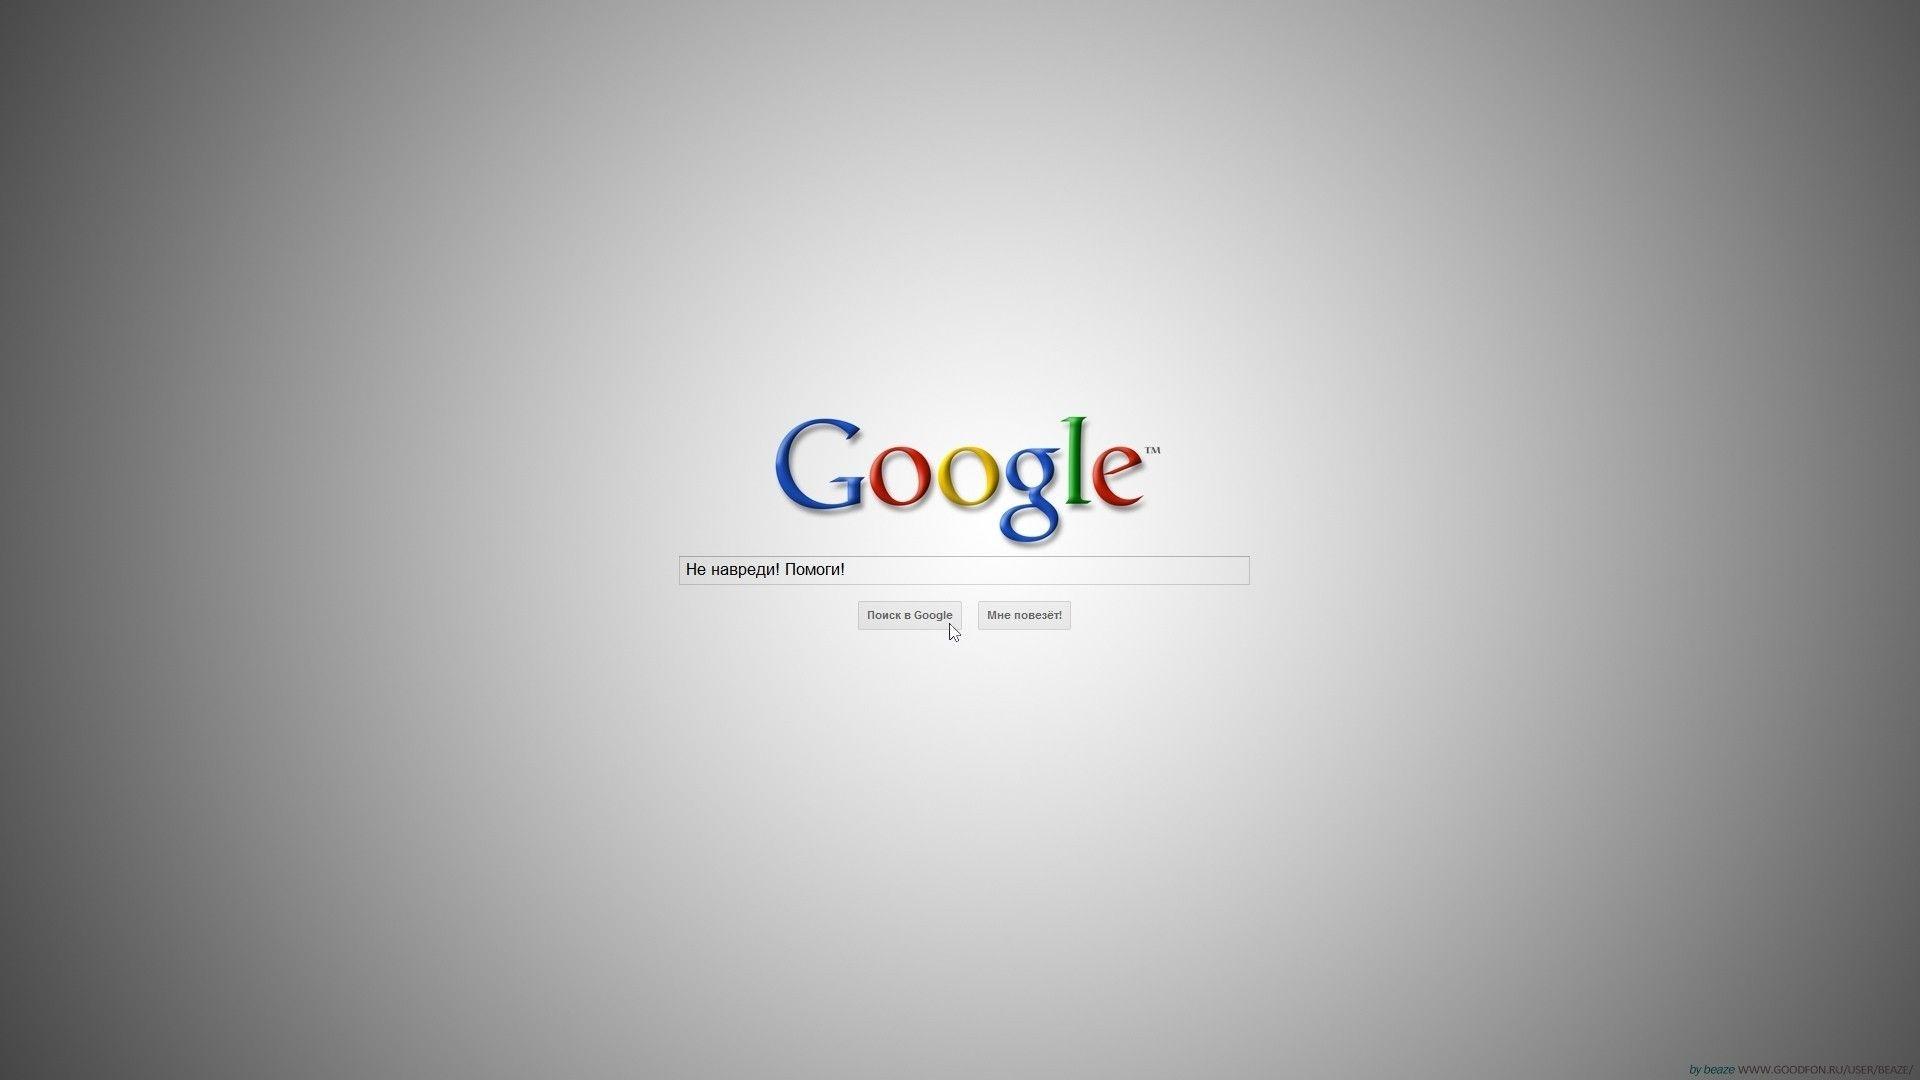 Google Wallpapers Free HD Download 500 HQ  Unsplash